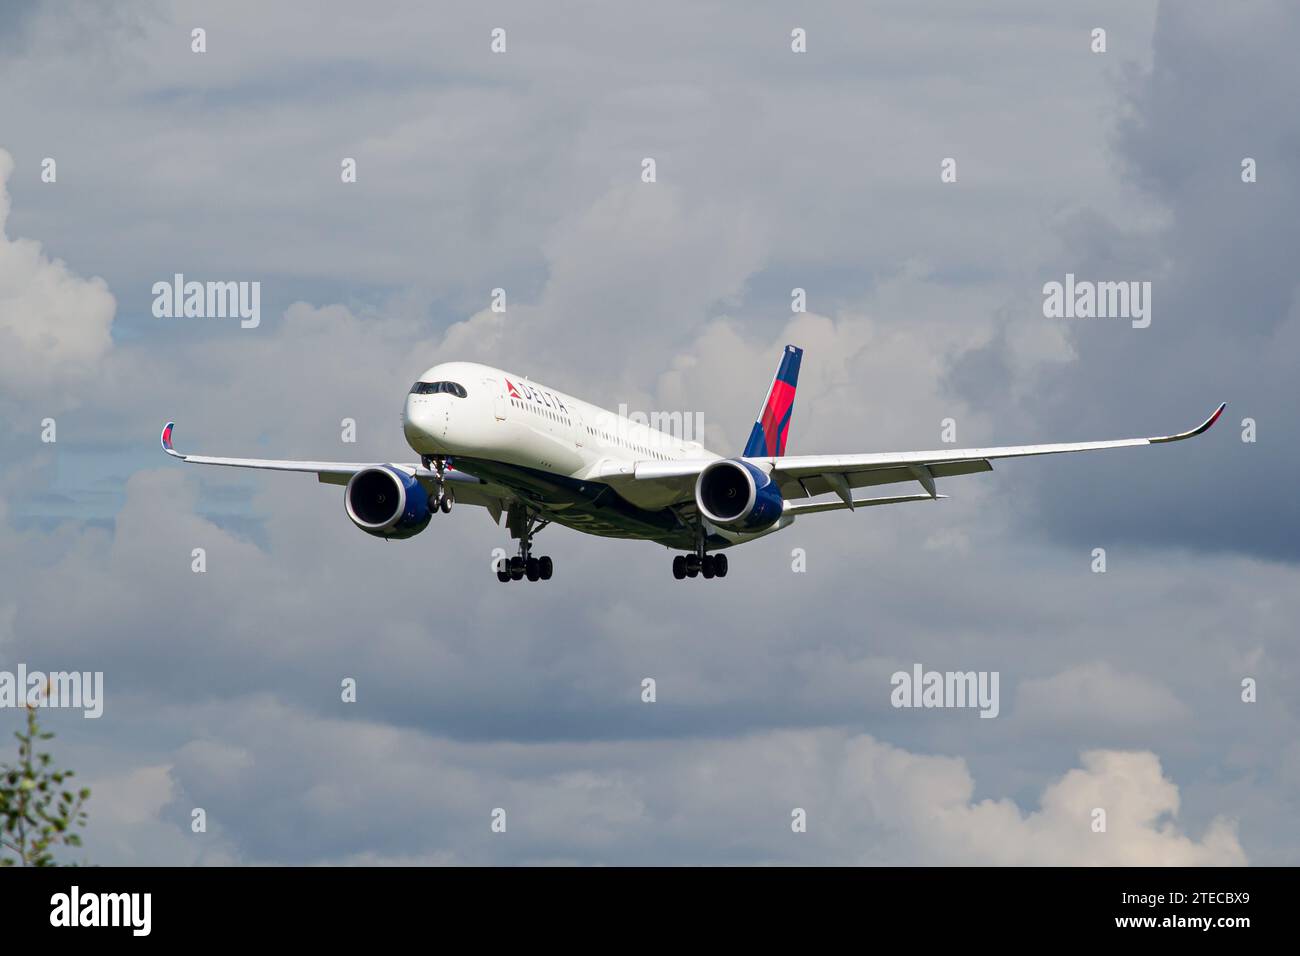 Delta Air Lines aeromobili Airbus A350-900 atterrano a Leopoli. Questa è stata la prima visita dell'A350 all'aeroporto di Leopoli. Foto di alta qualità Foto Stock